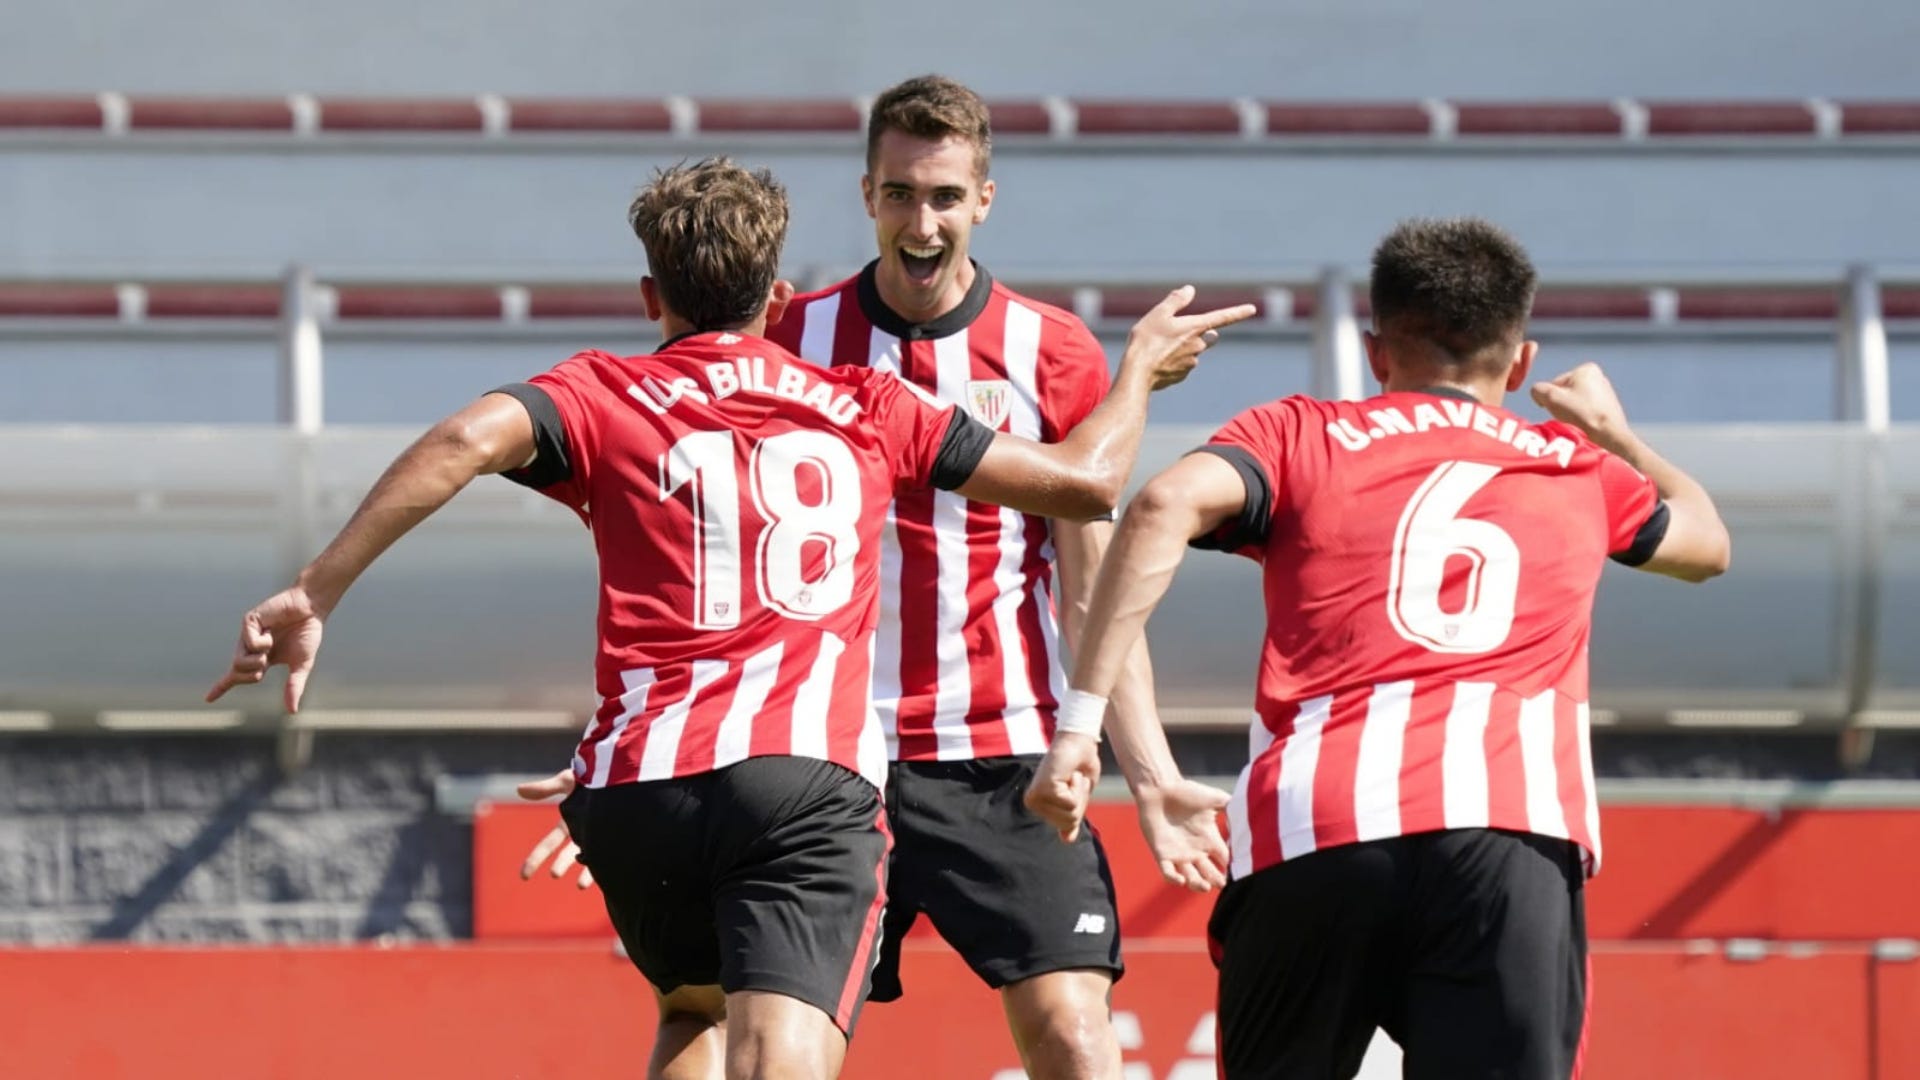 Dónde ver en directo online los del Bilbao Athletic en la Primera RFEF 2022-2023: Canal de plataforma y streaming en vivo | Goal.com Espana